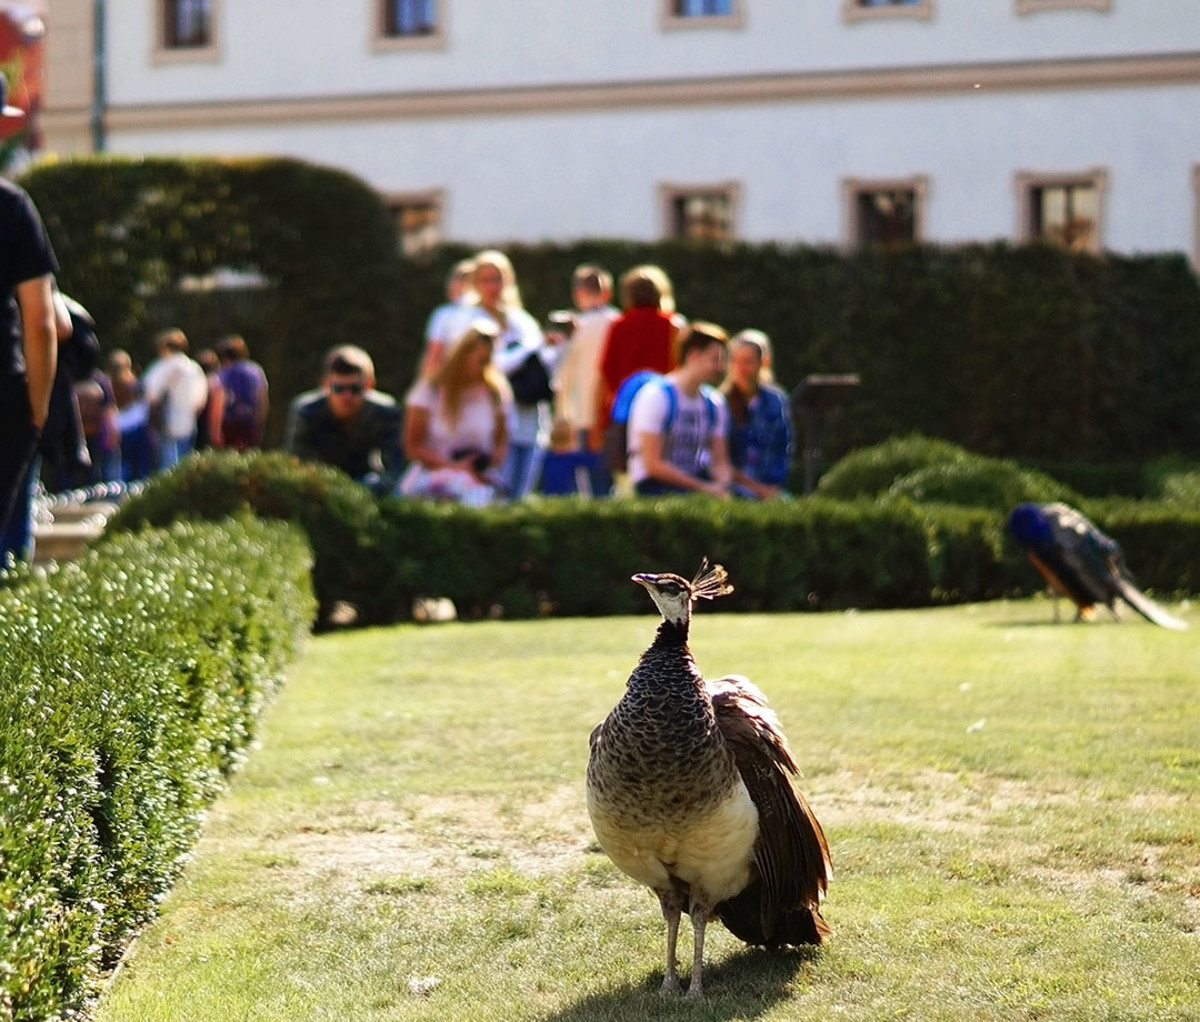 Peacocks freely wander the Wallenstein Garden in Prague